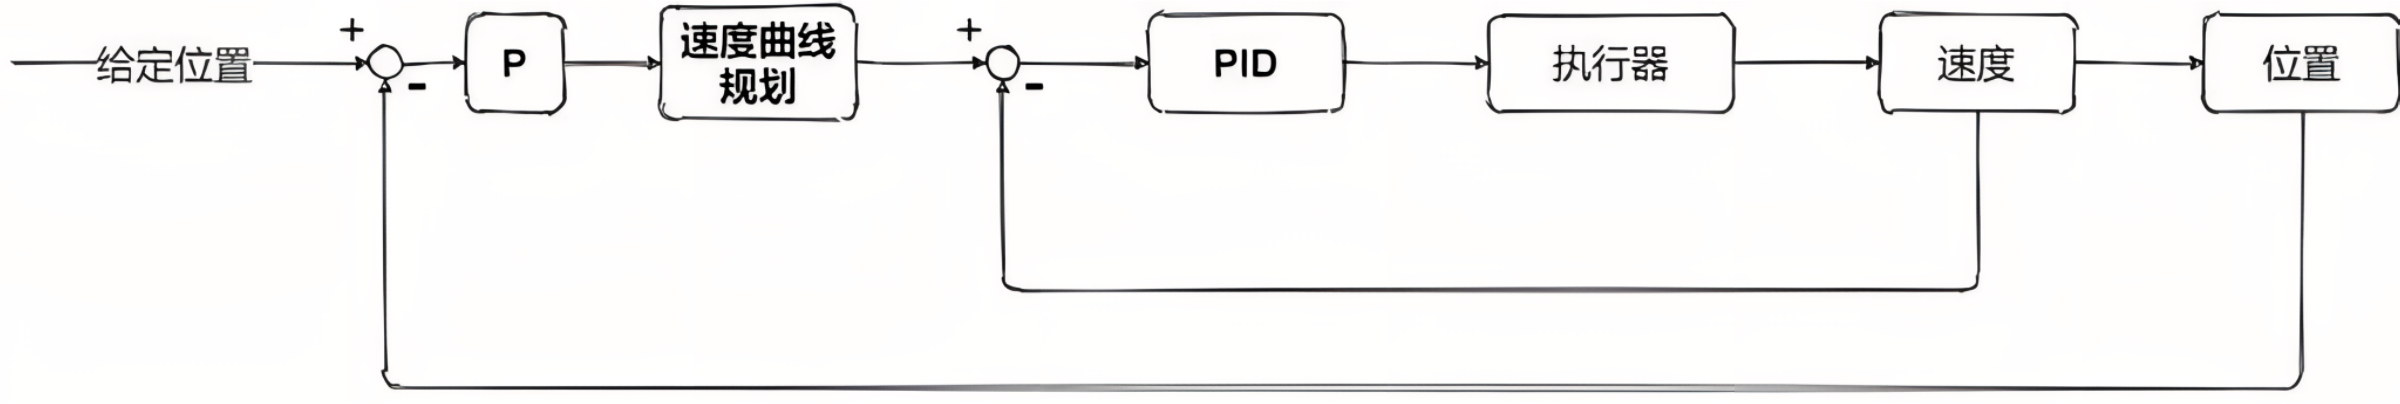 PID框图3